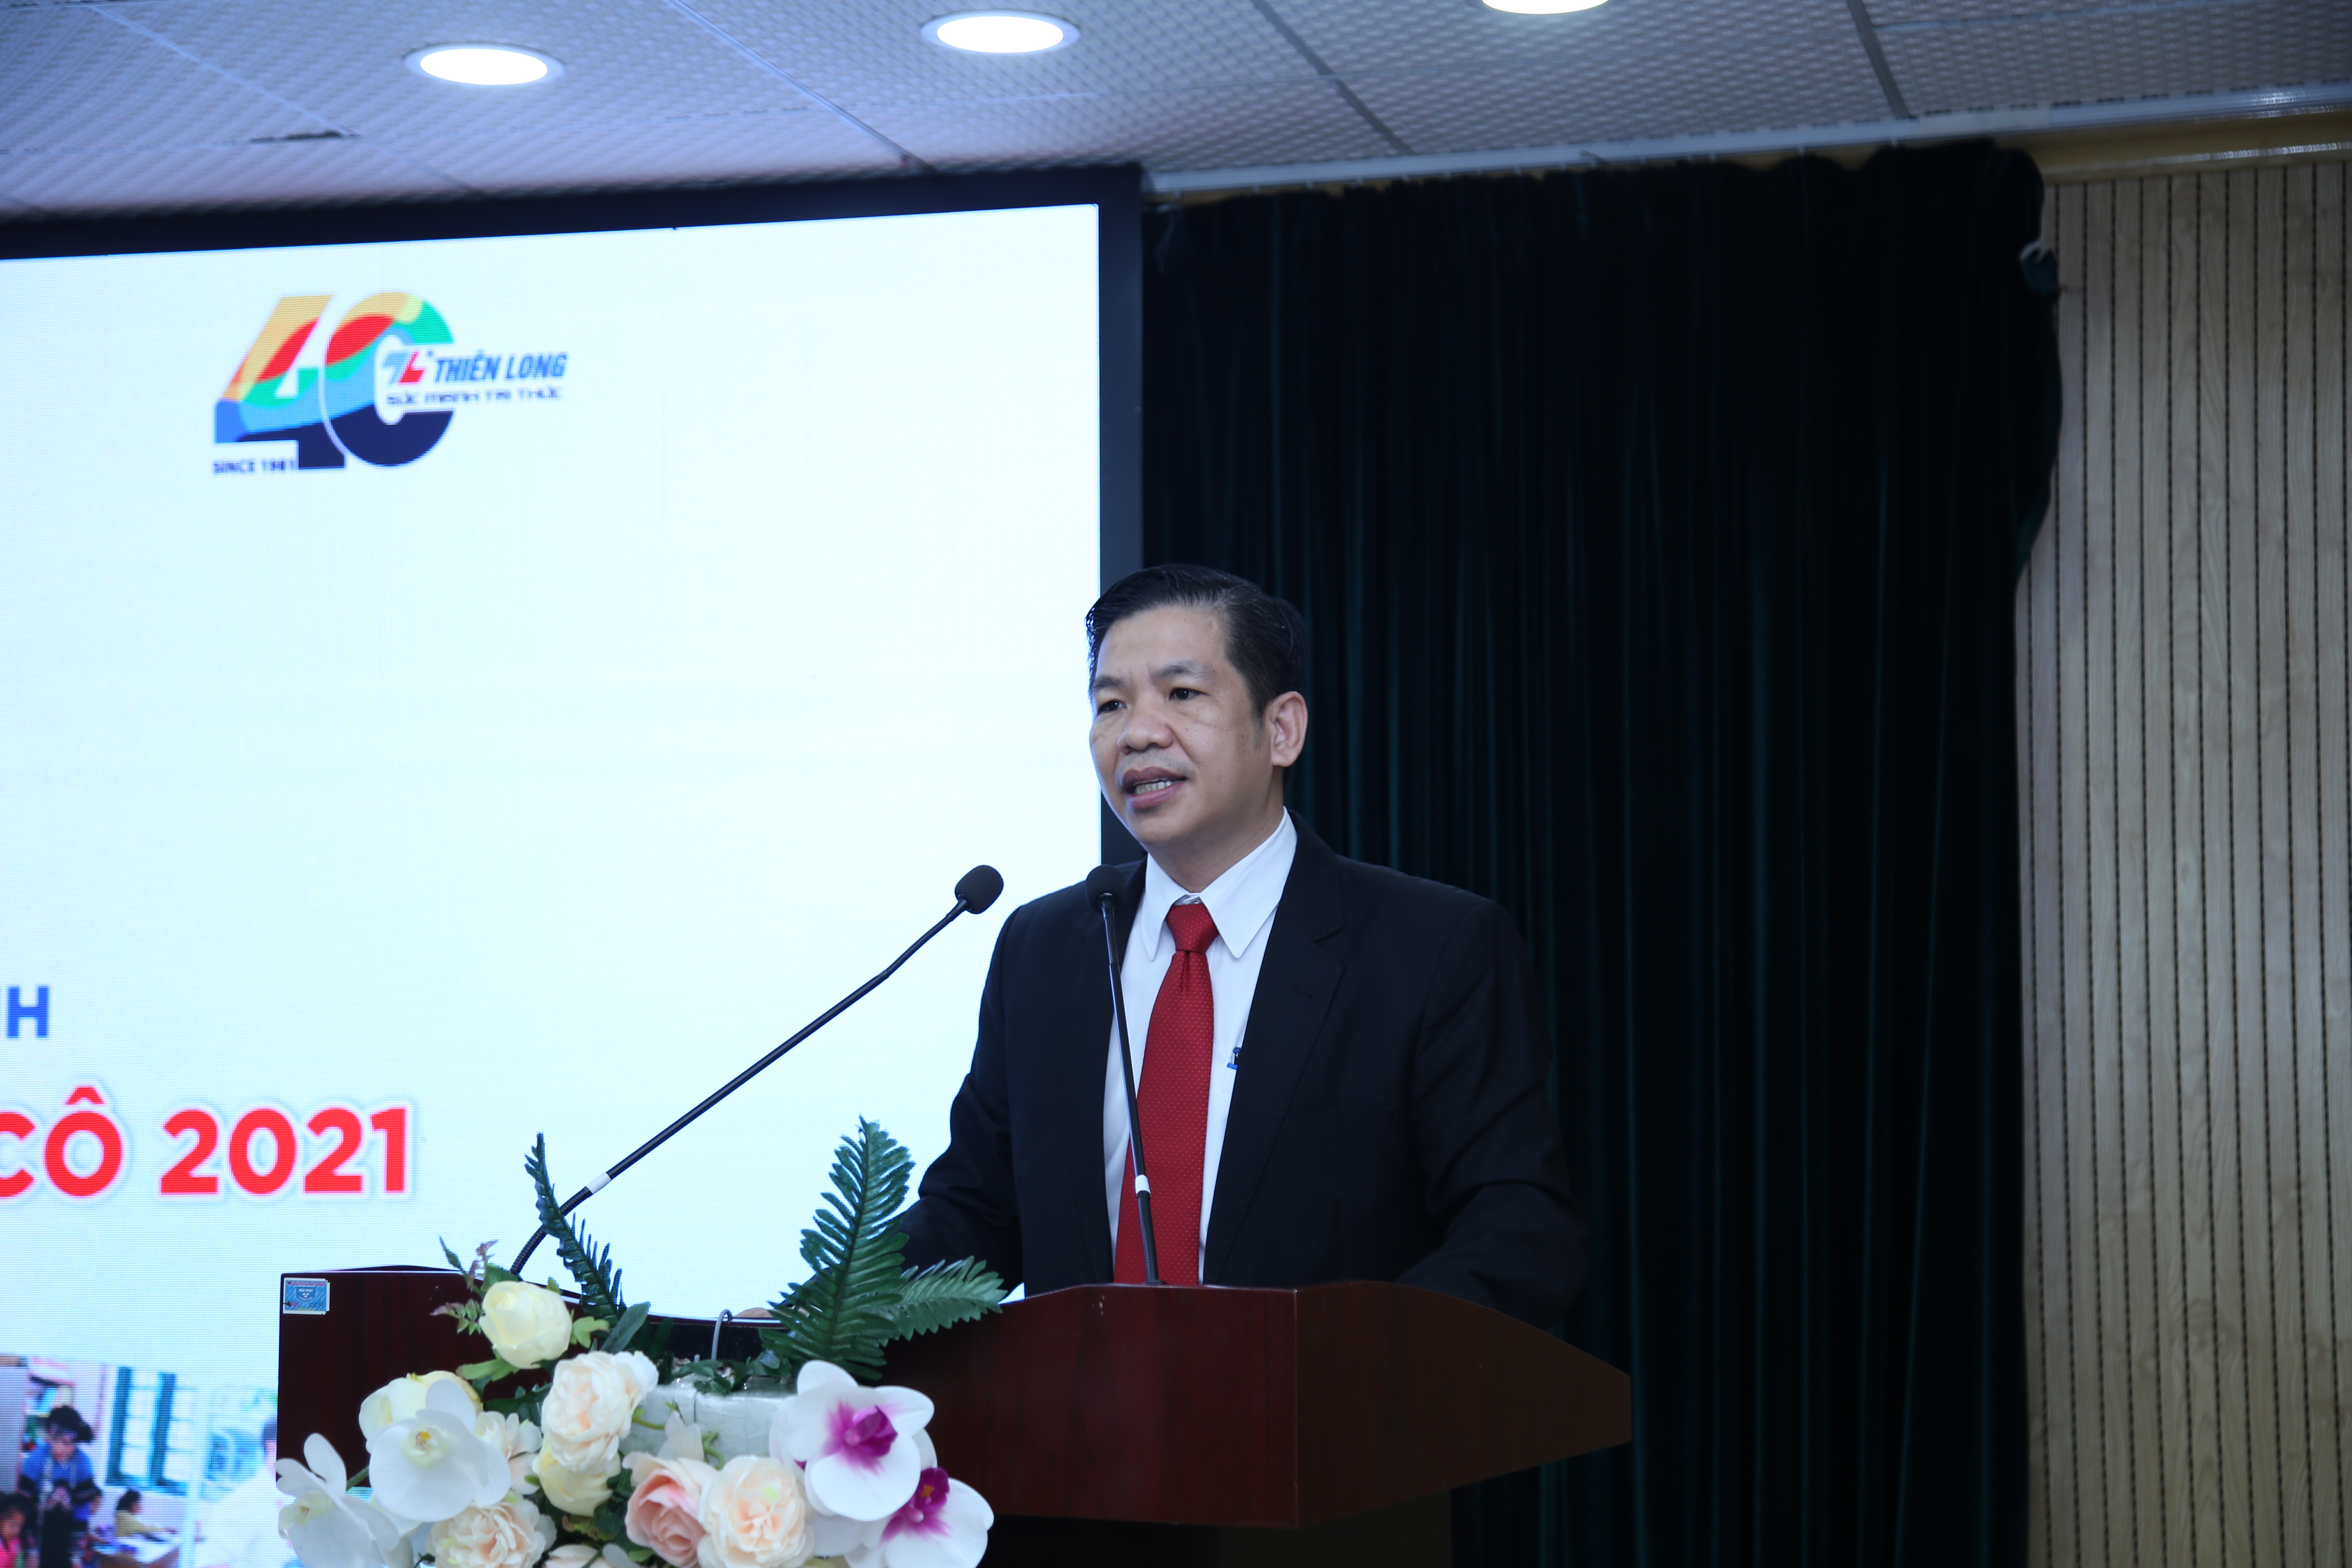 Giám đốc Marketing Tập đoàn Thiên Long Trịnh Văn Hào phát biểu tại Chương trình